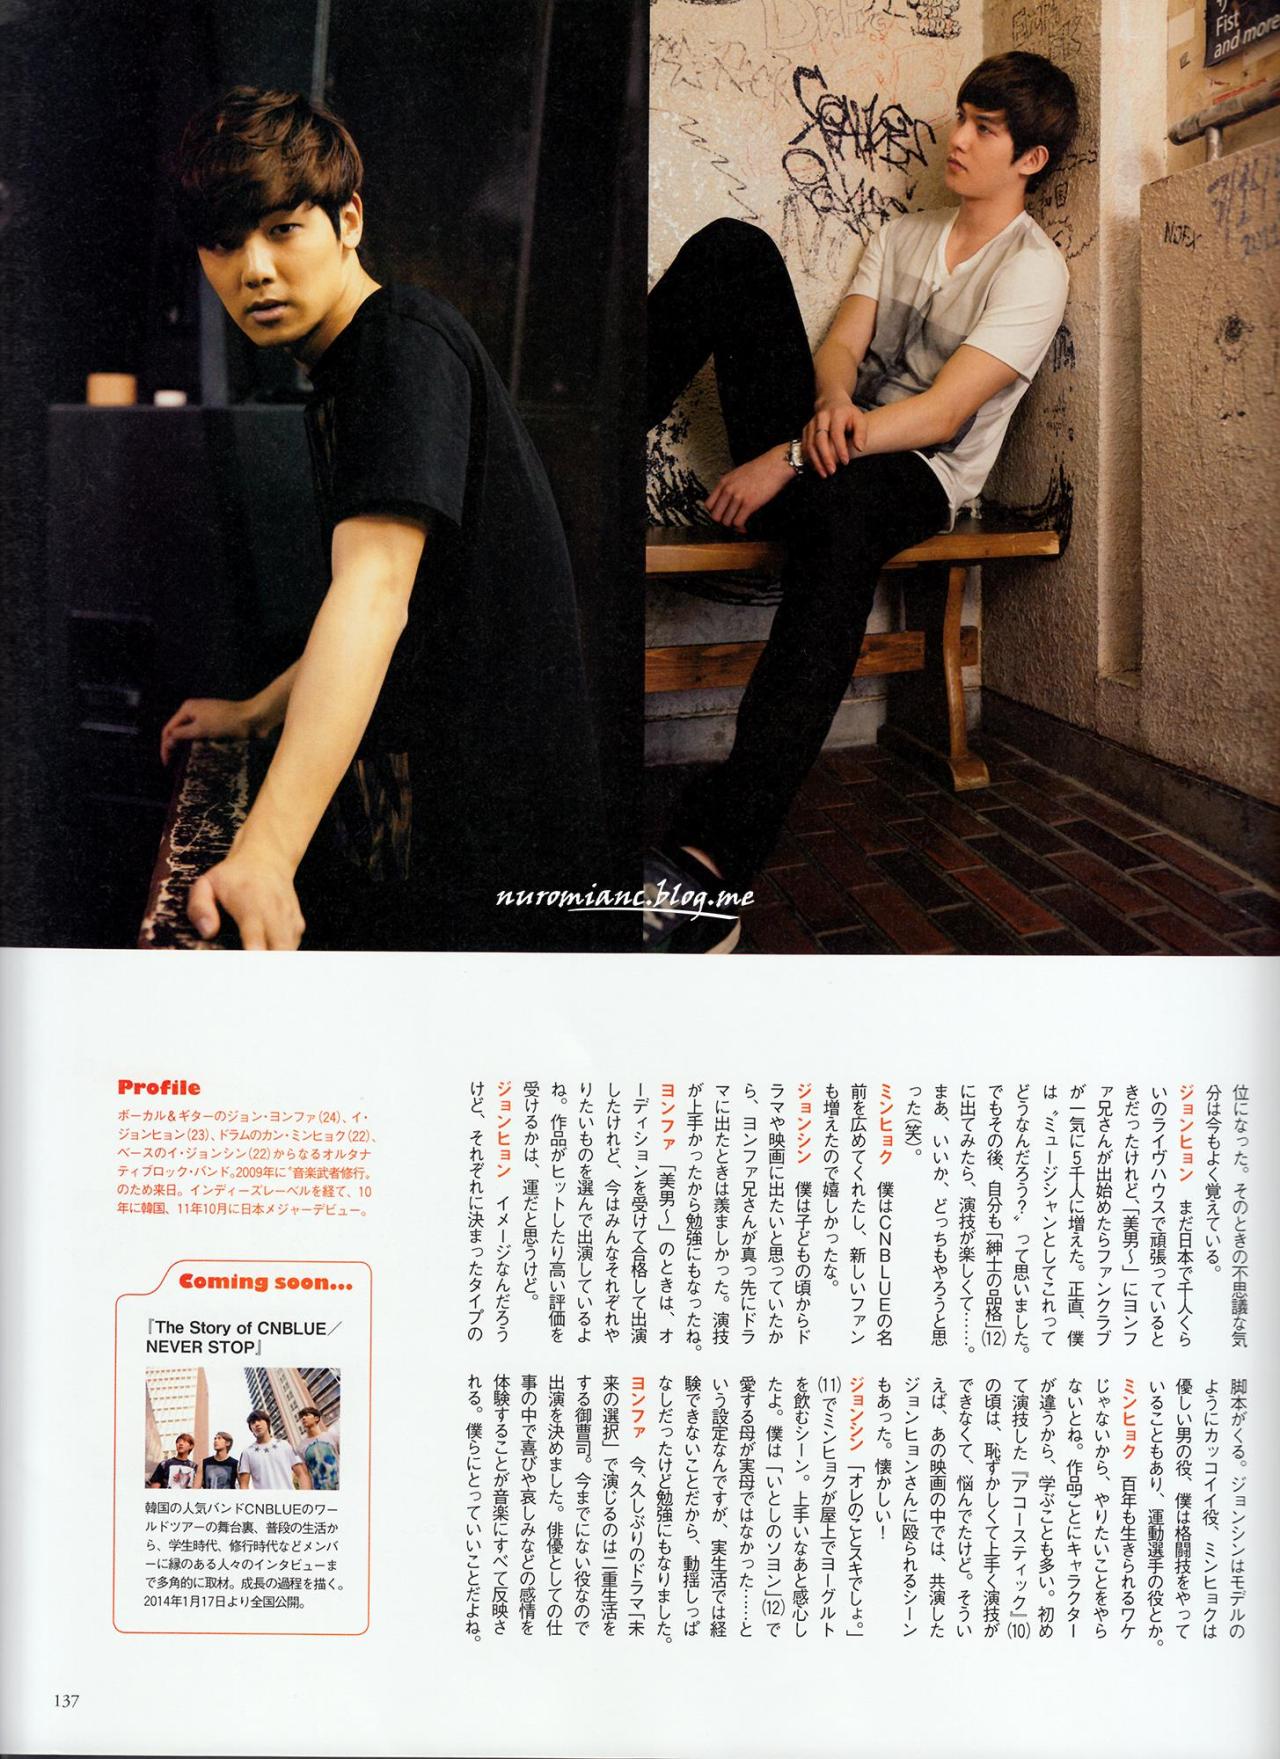 [Scans] CREA Magazine (février 2014) Tumblr_mzncfguvqr1rgxfbio2_1280